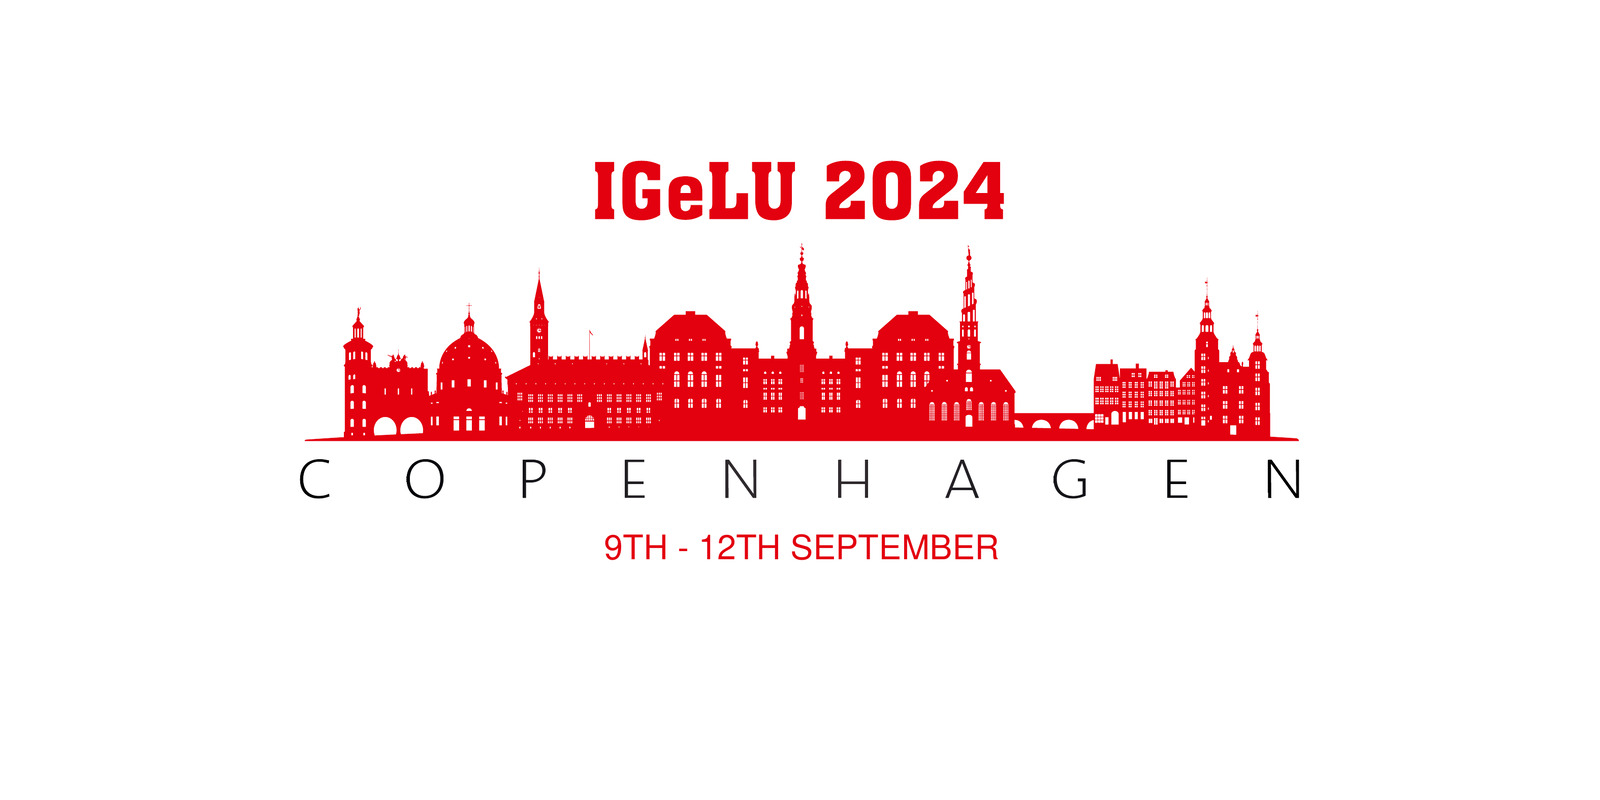 IGeLU 2024 Conference